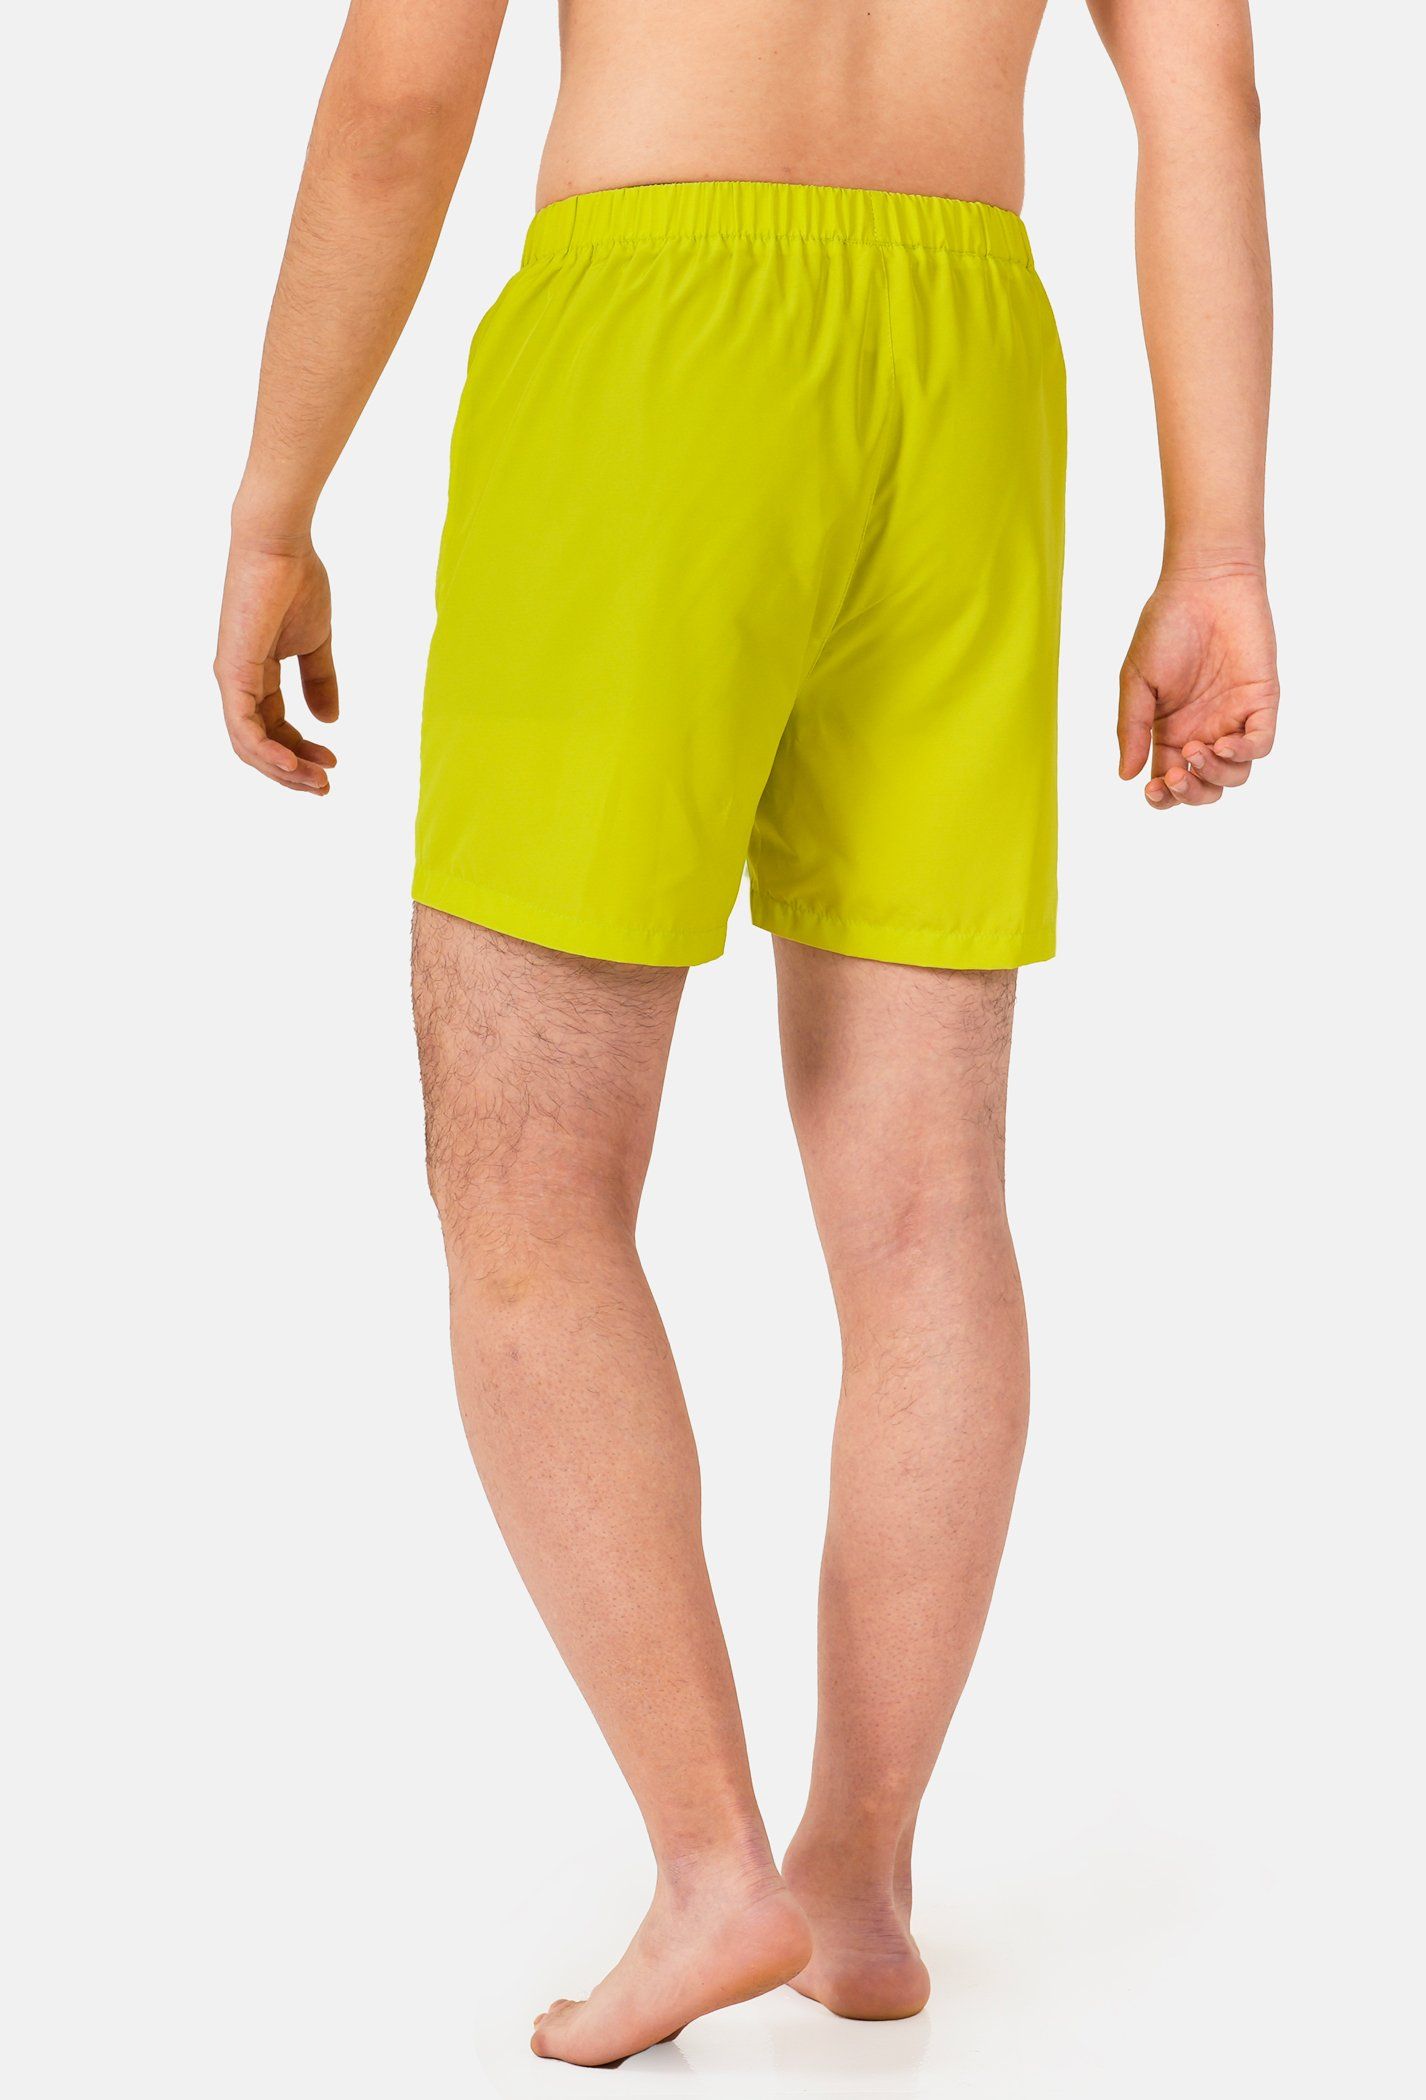 SĂN DEAL - Quần Shorts mặc nhà Coolmate Basics - Vàng chanh Vàng chanh 3